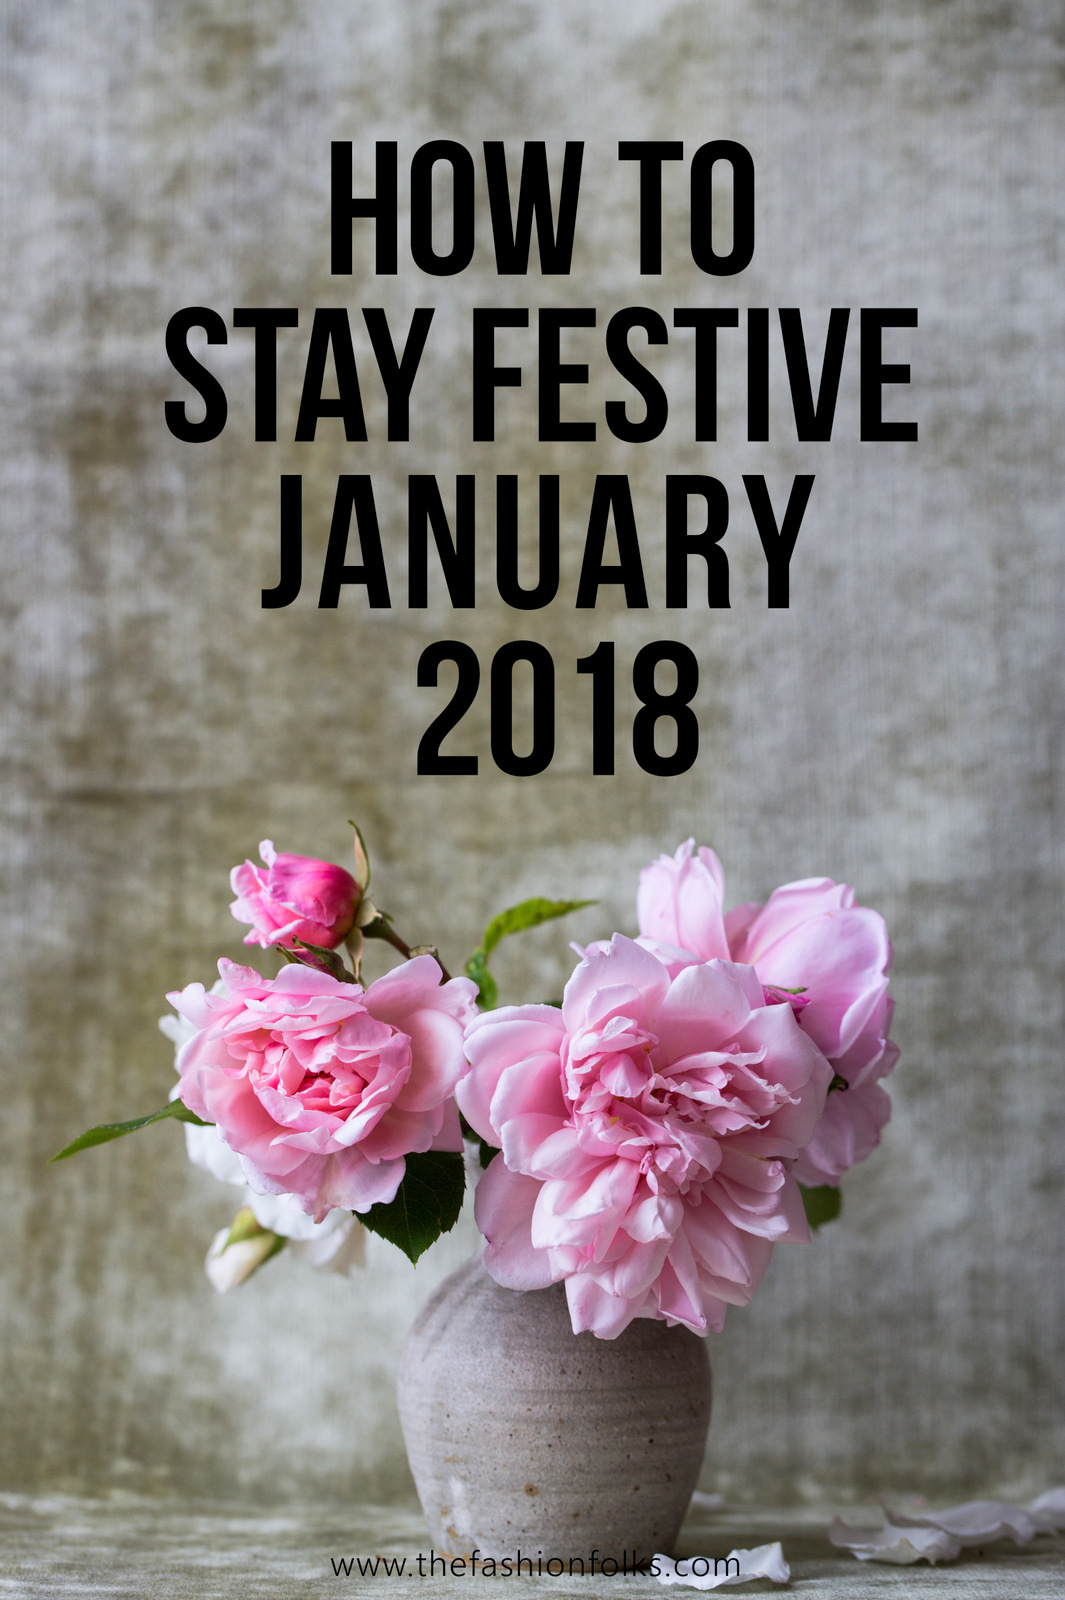 How To Stay Festive January 2018 | The Fashion Folks